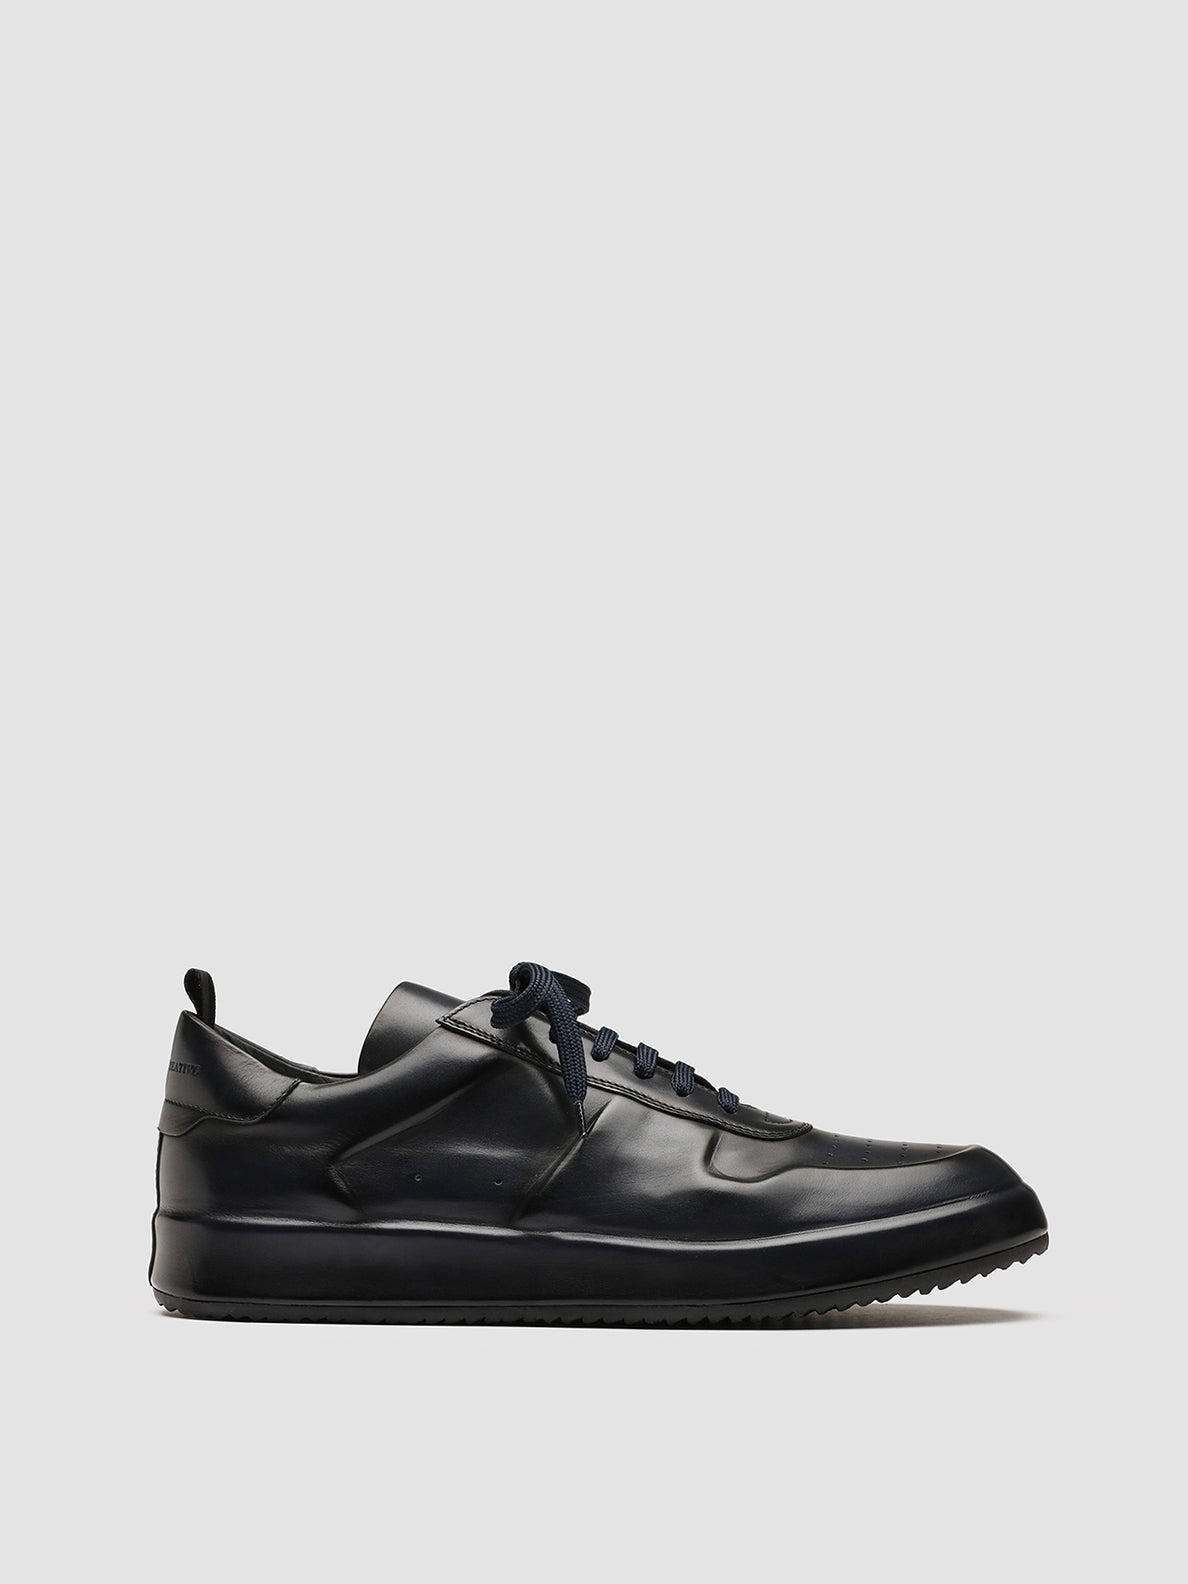 9 Louis Vuitton First Copy Shoes ideas  louis vuitton shoes, formal shoes,  shoes